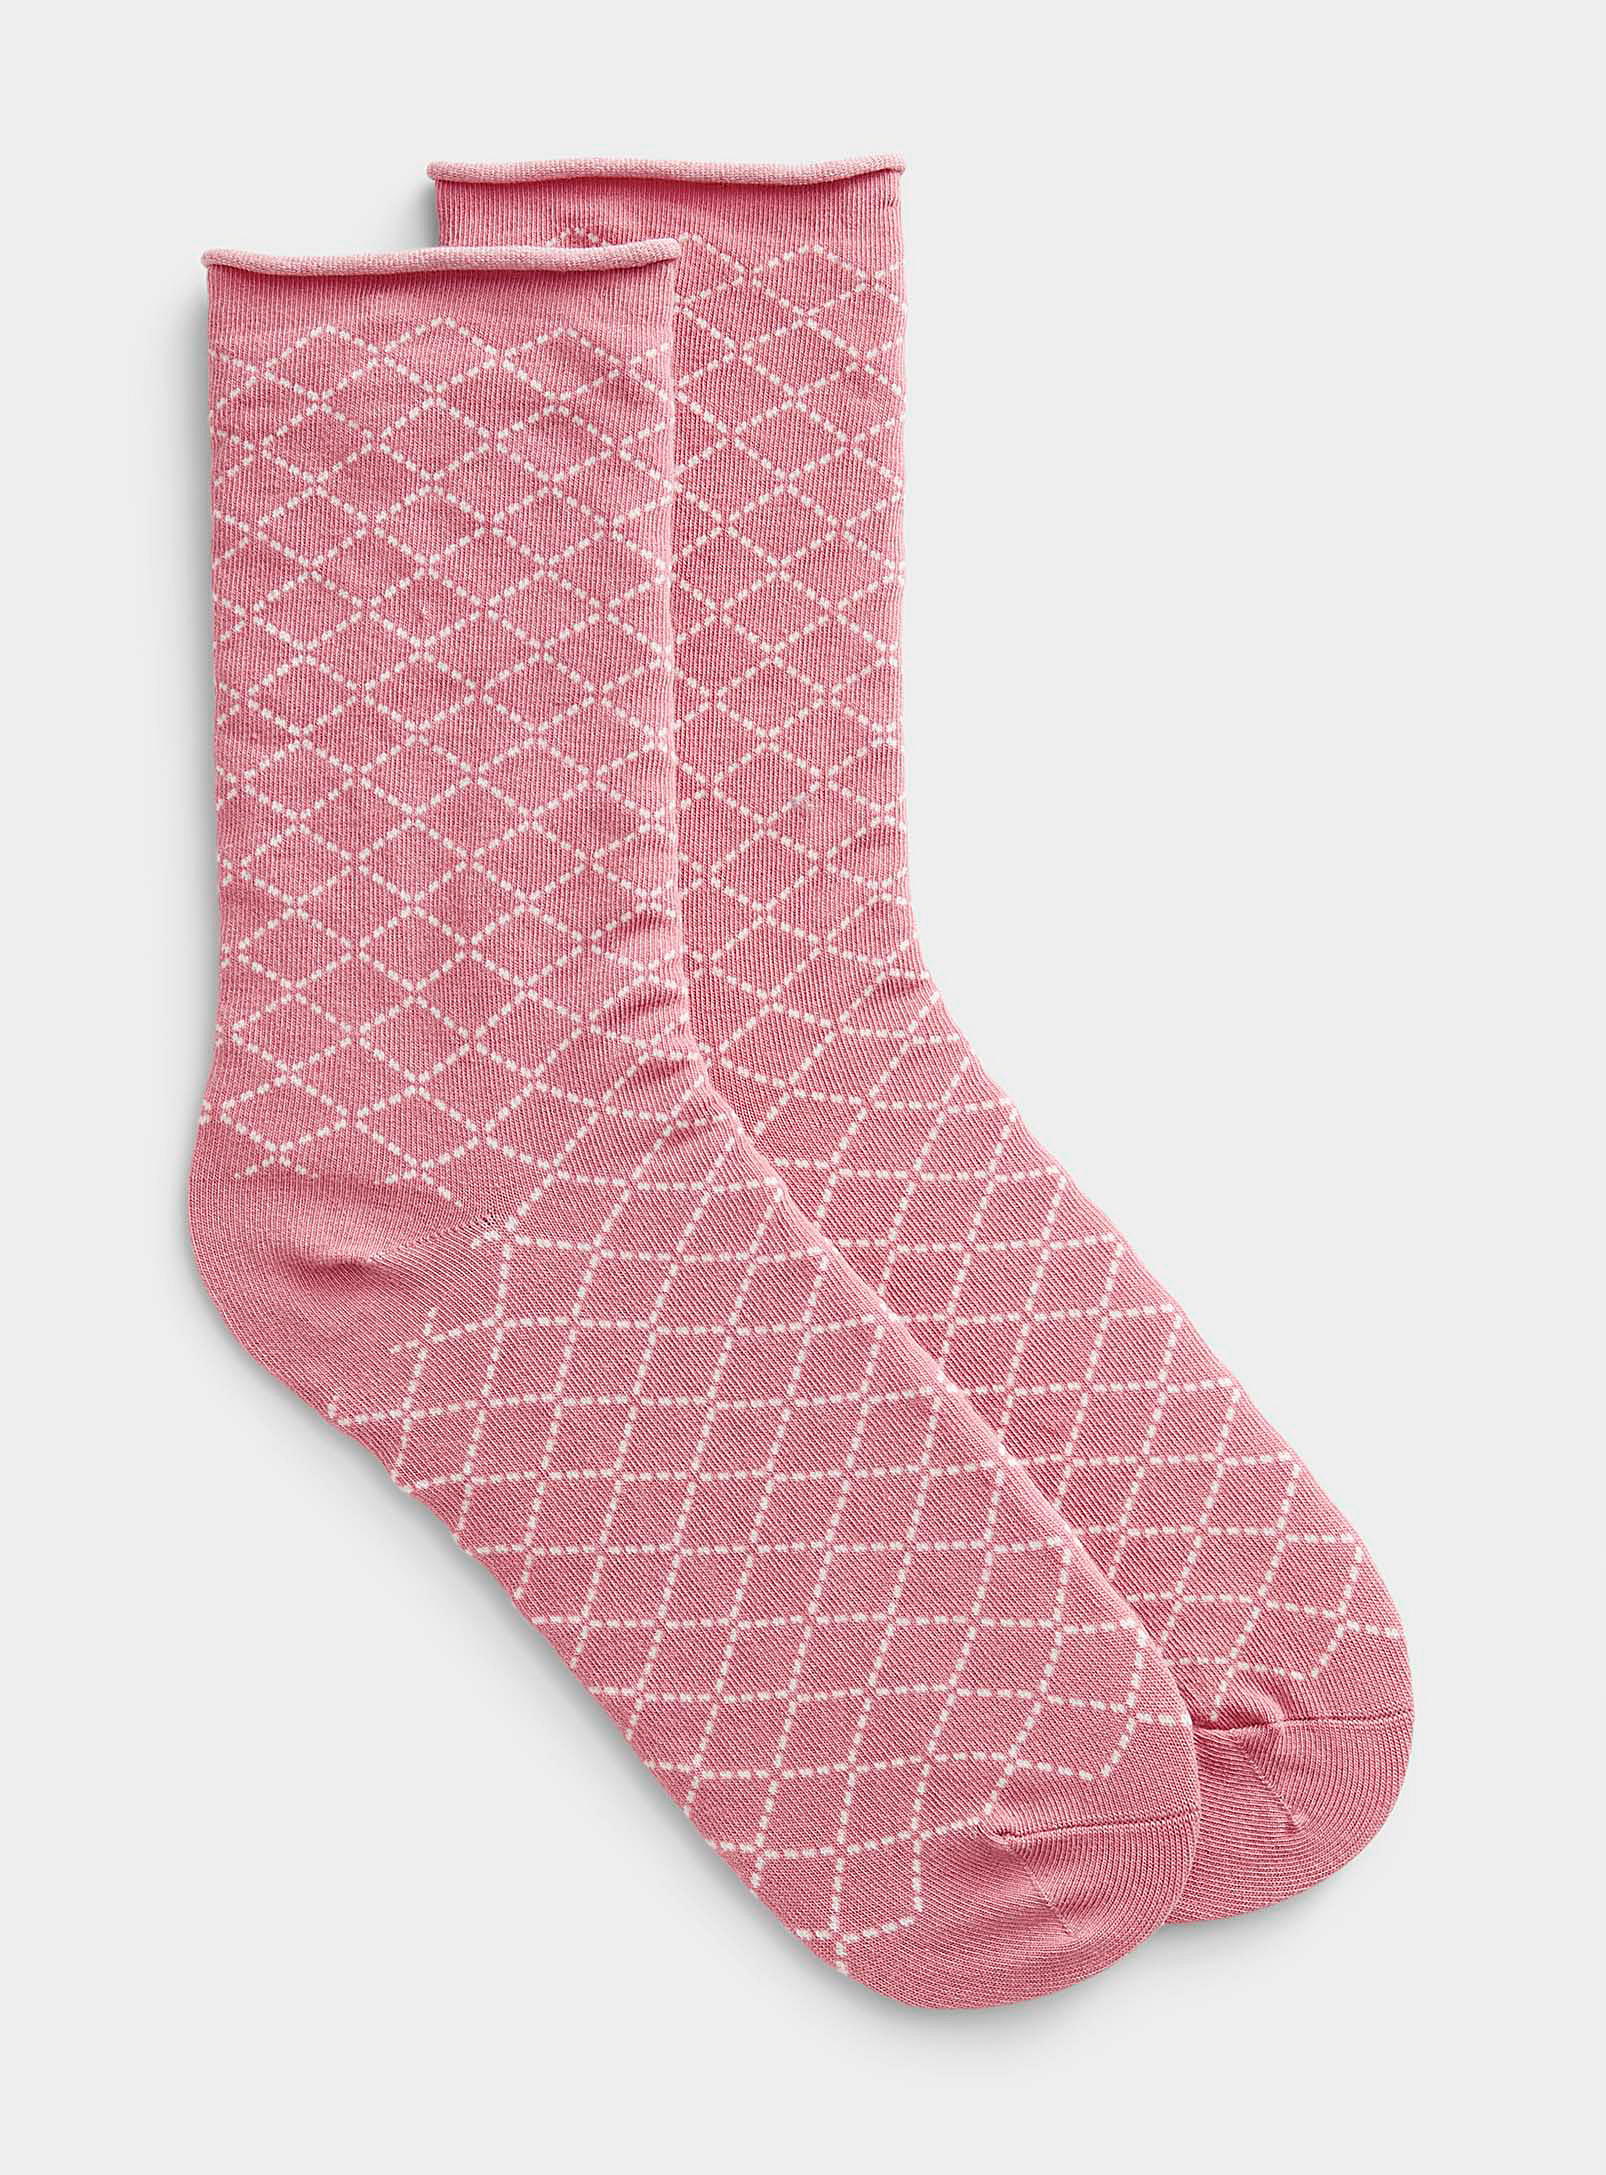 Simons - Women's Dotwork diamond socks